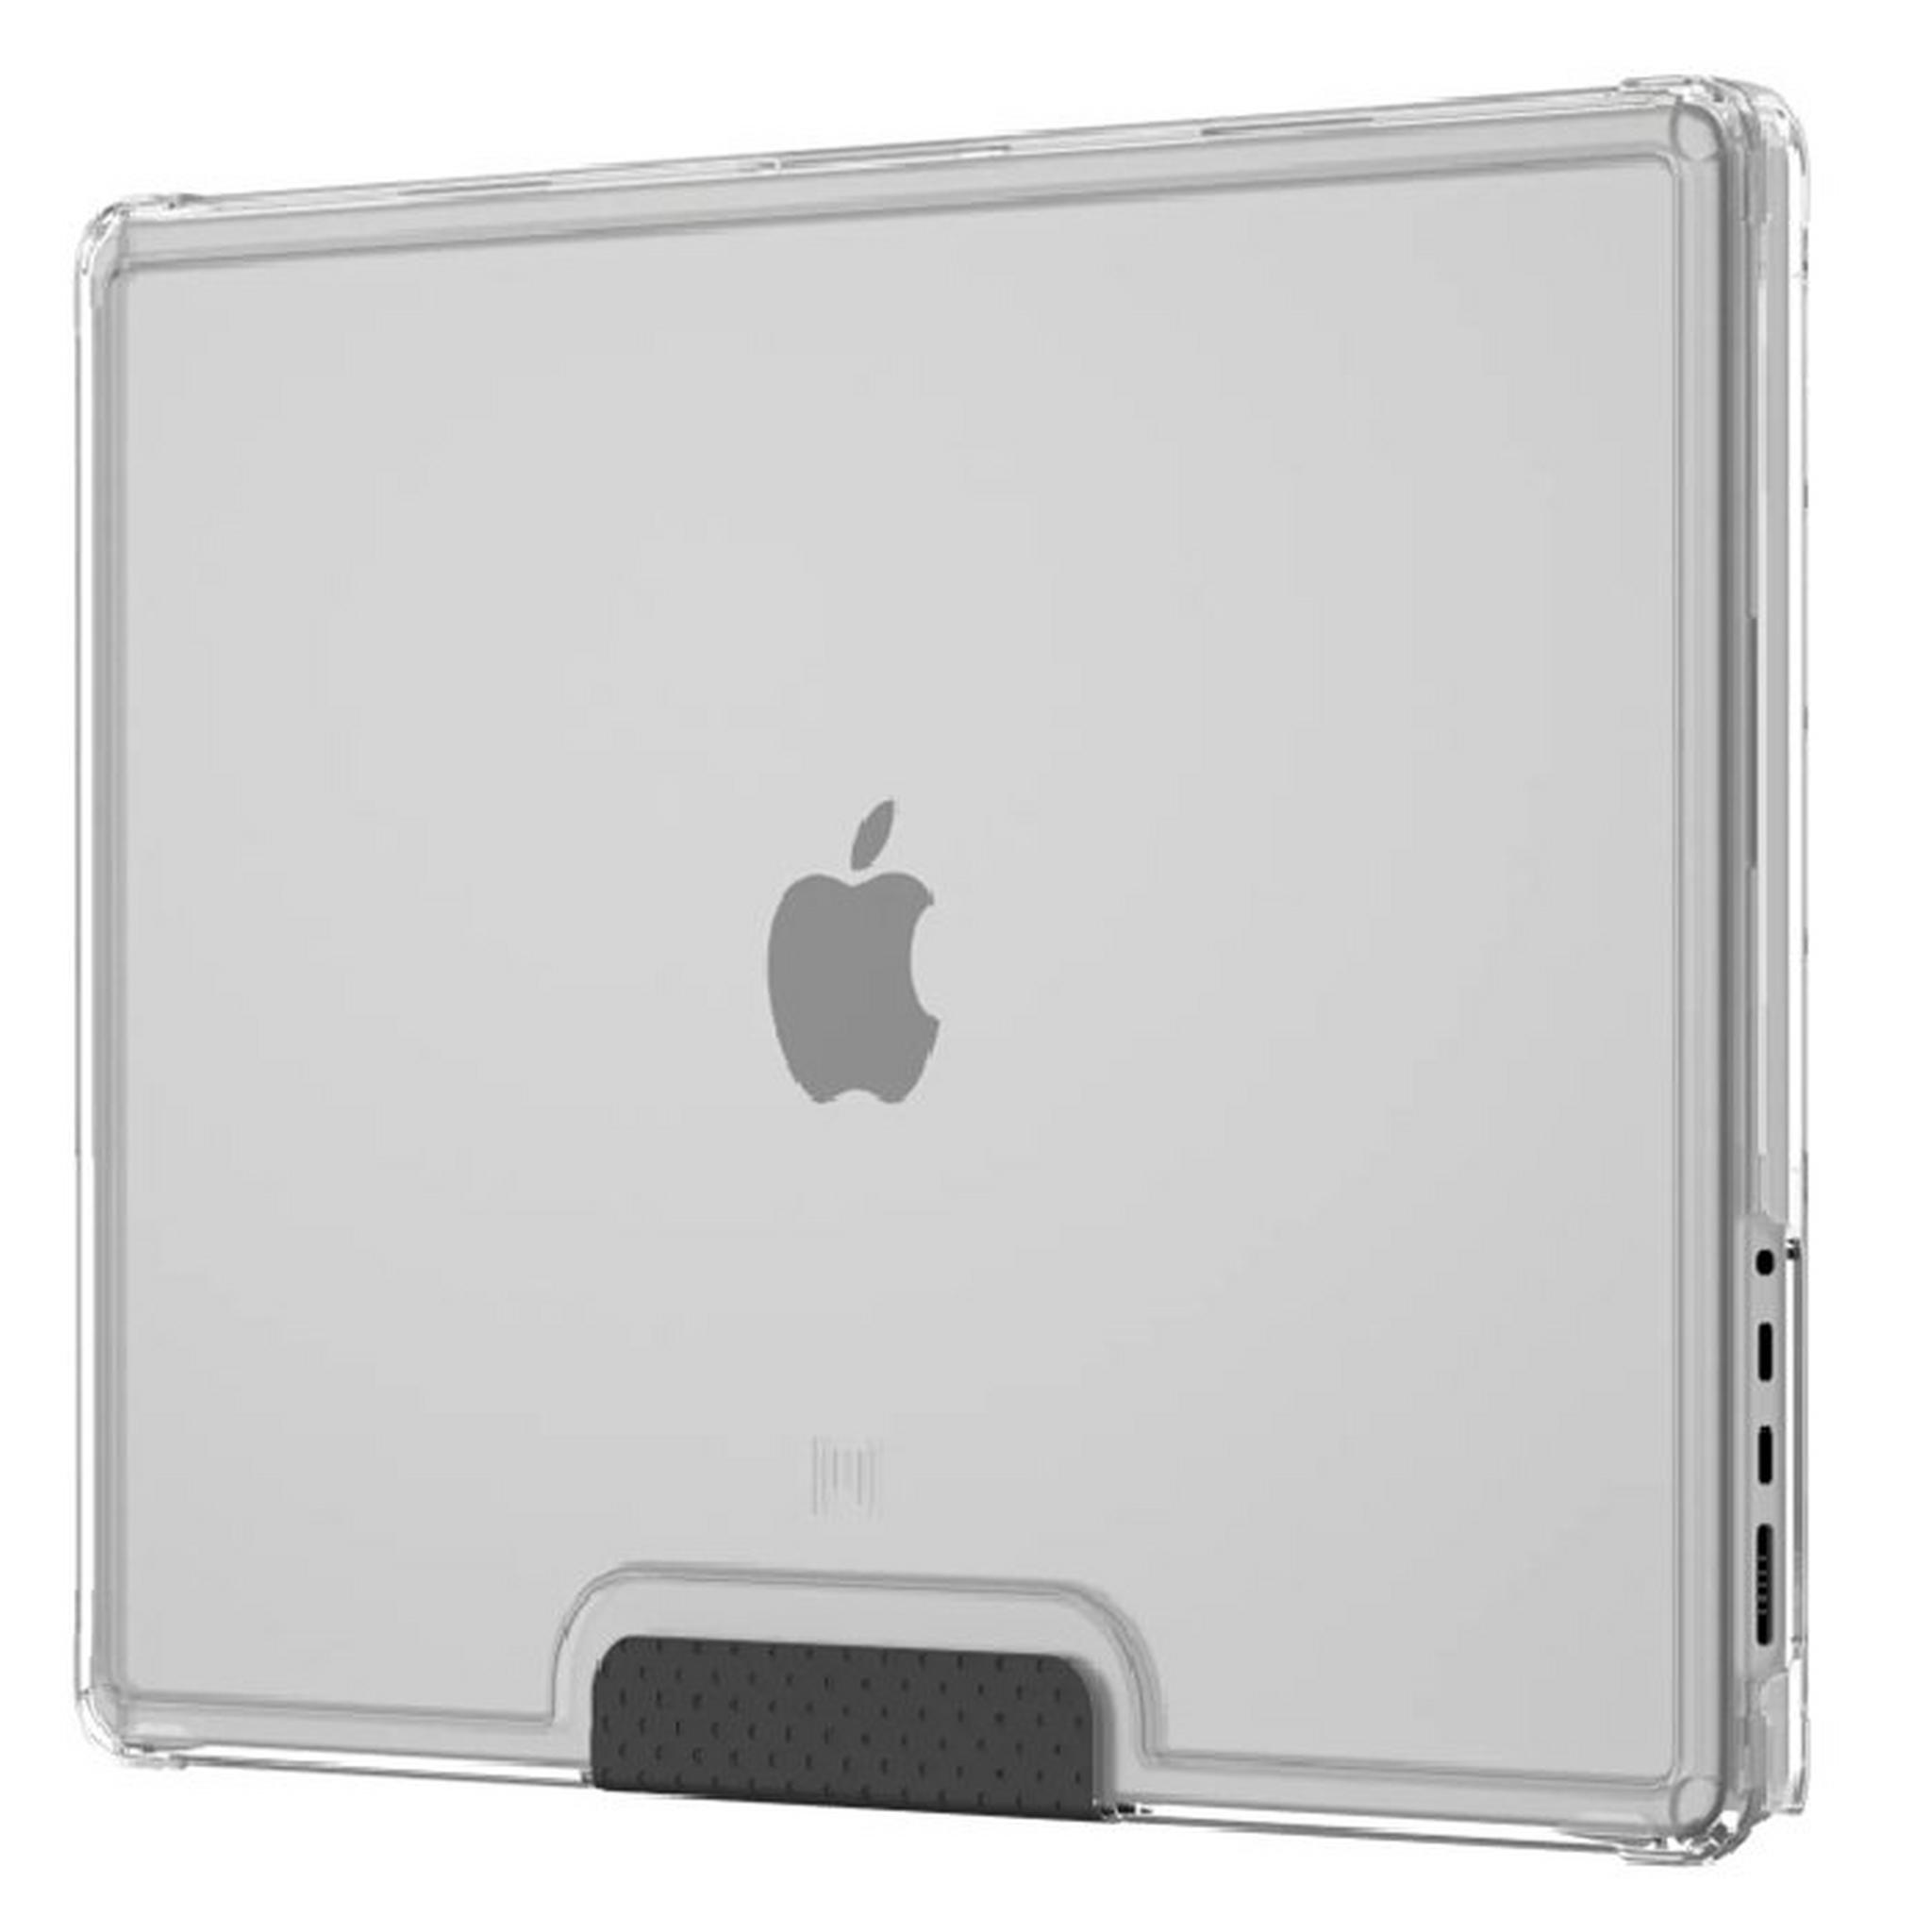 غطاء حماية لوسنت لأجهزة ماك بوك برو 16 بوصة - شفاف/أسود